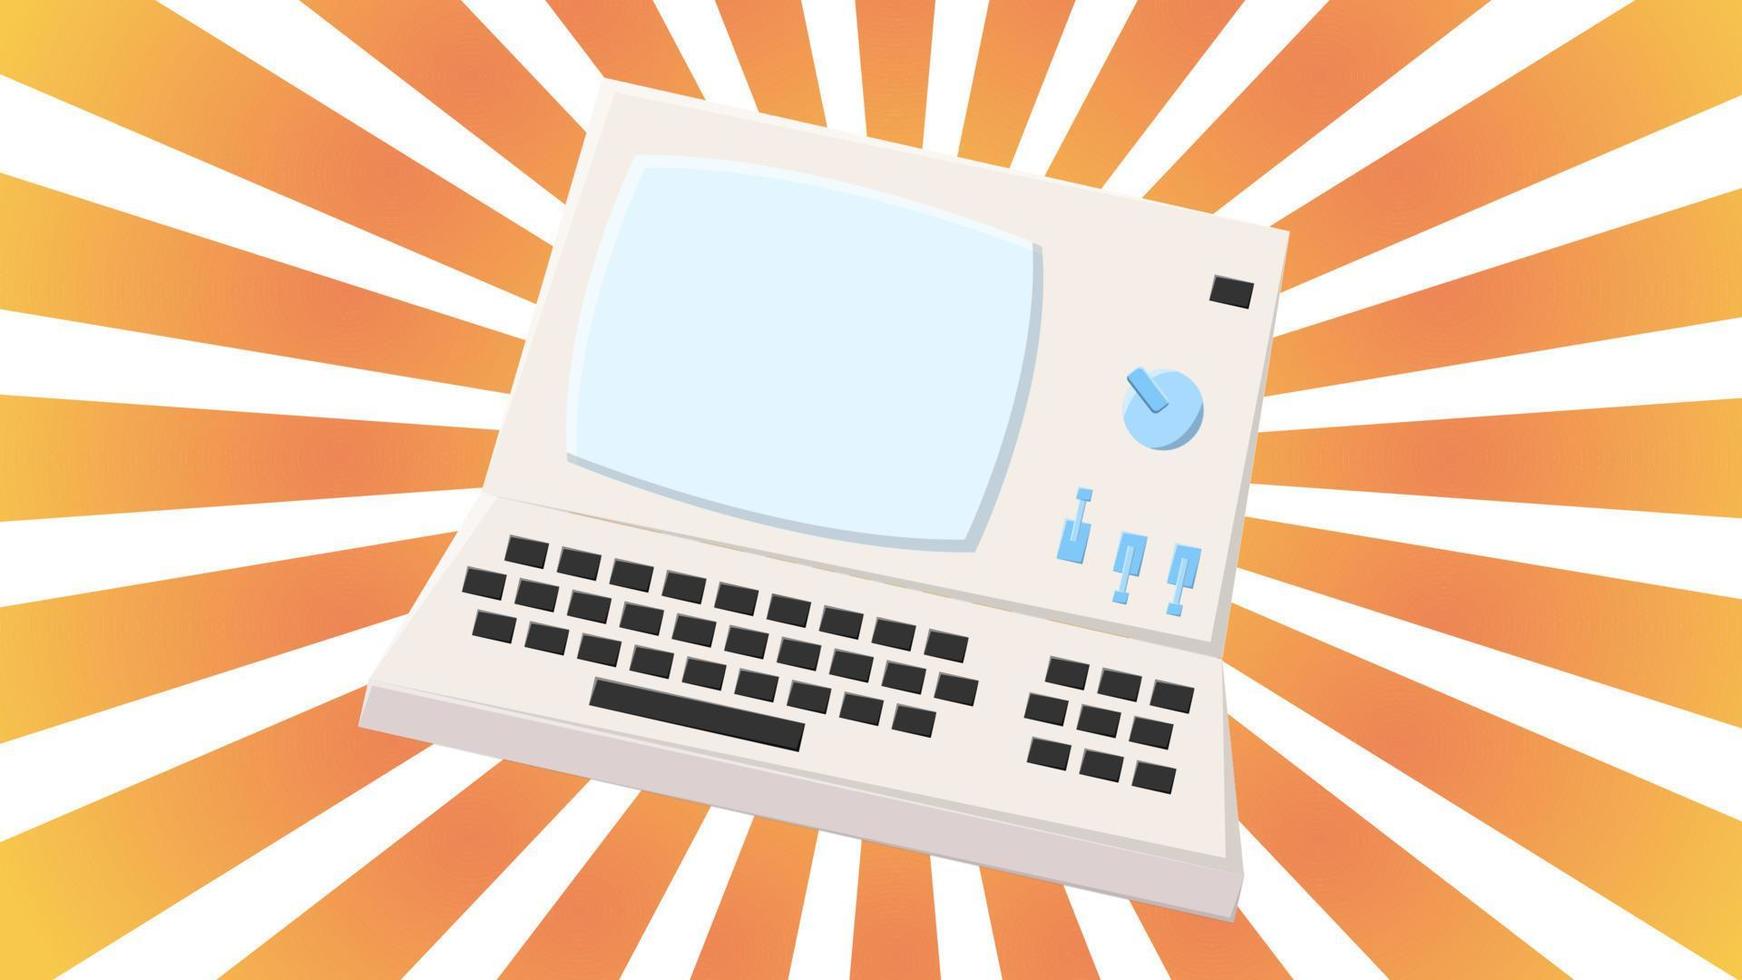 oud retro wijnoogst hipster computer, pc met toezicht houden op en toetsenbord van jaren 70, jaren 80, 90s tegen de achtergrond van de oranje stralen van de zon. vector illustratie